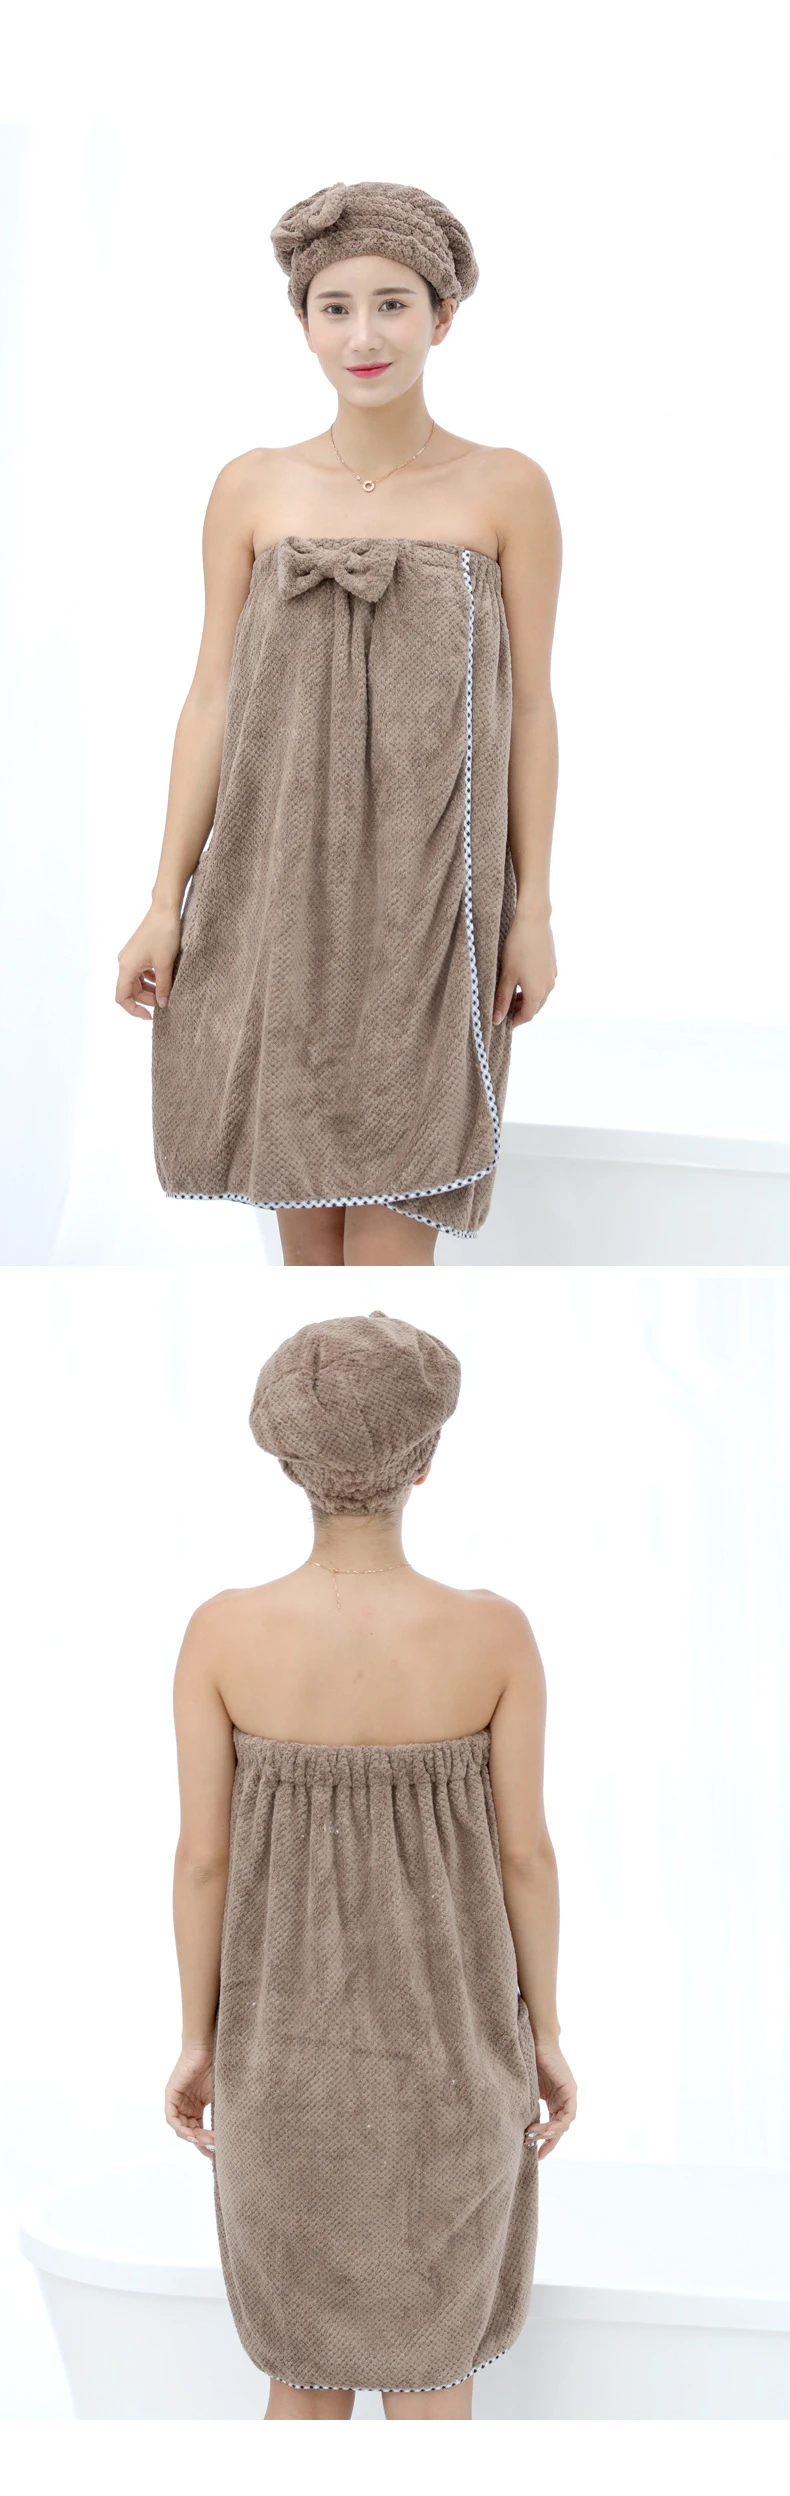 Мягкие полотенца из микрофибры Модные женские сексуальные носимые быстросохнущие Волшебные Купальные пляжные халат для спа стирка одежда пляжные платья